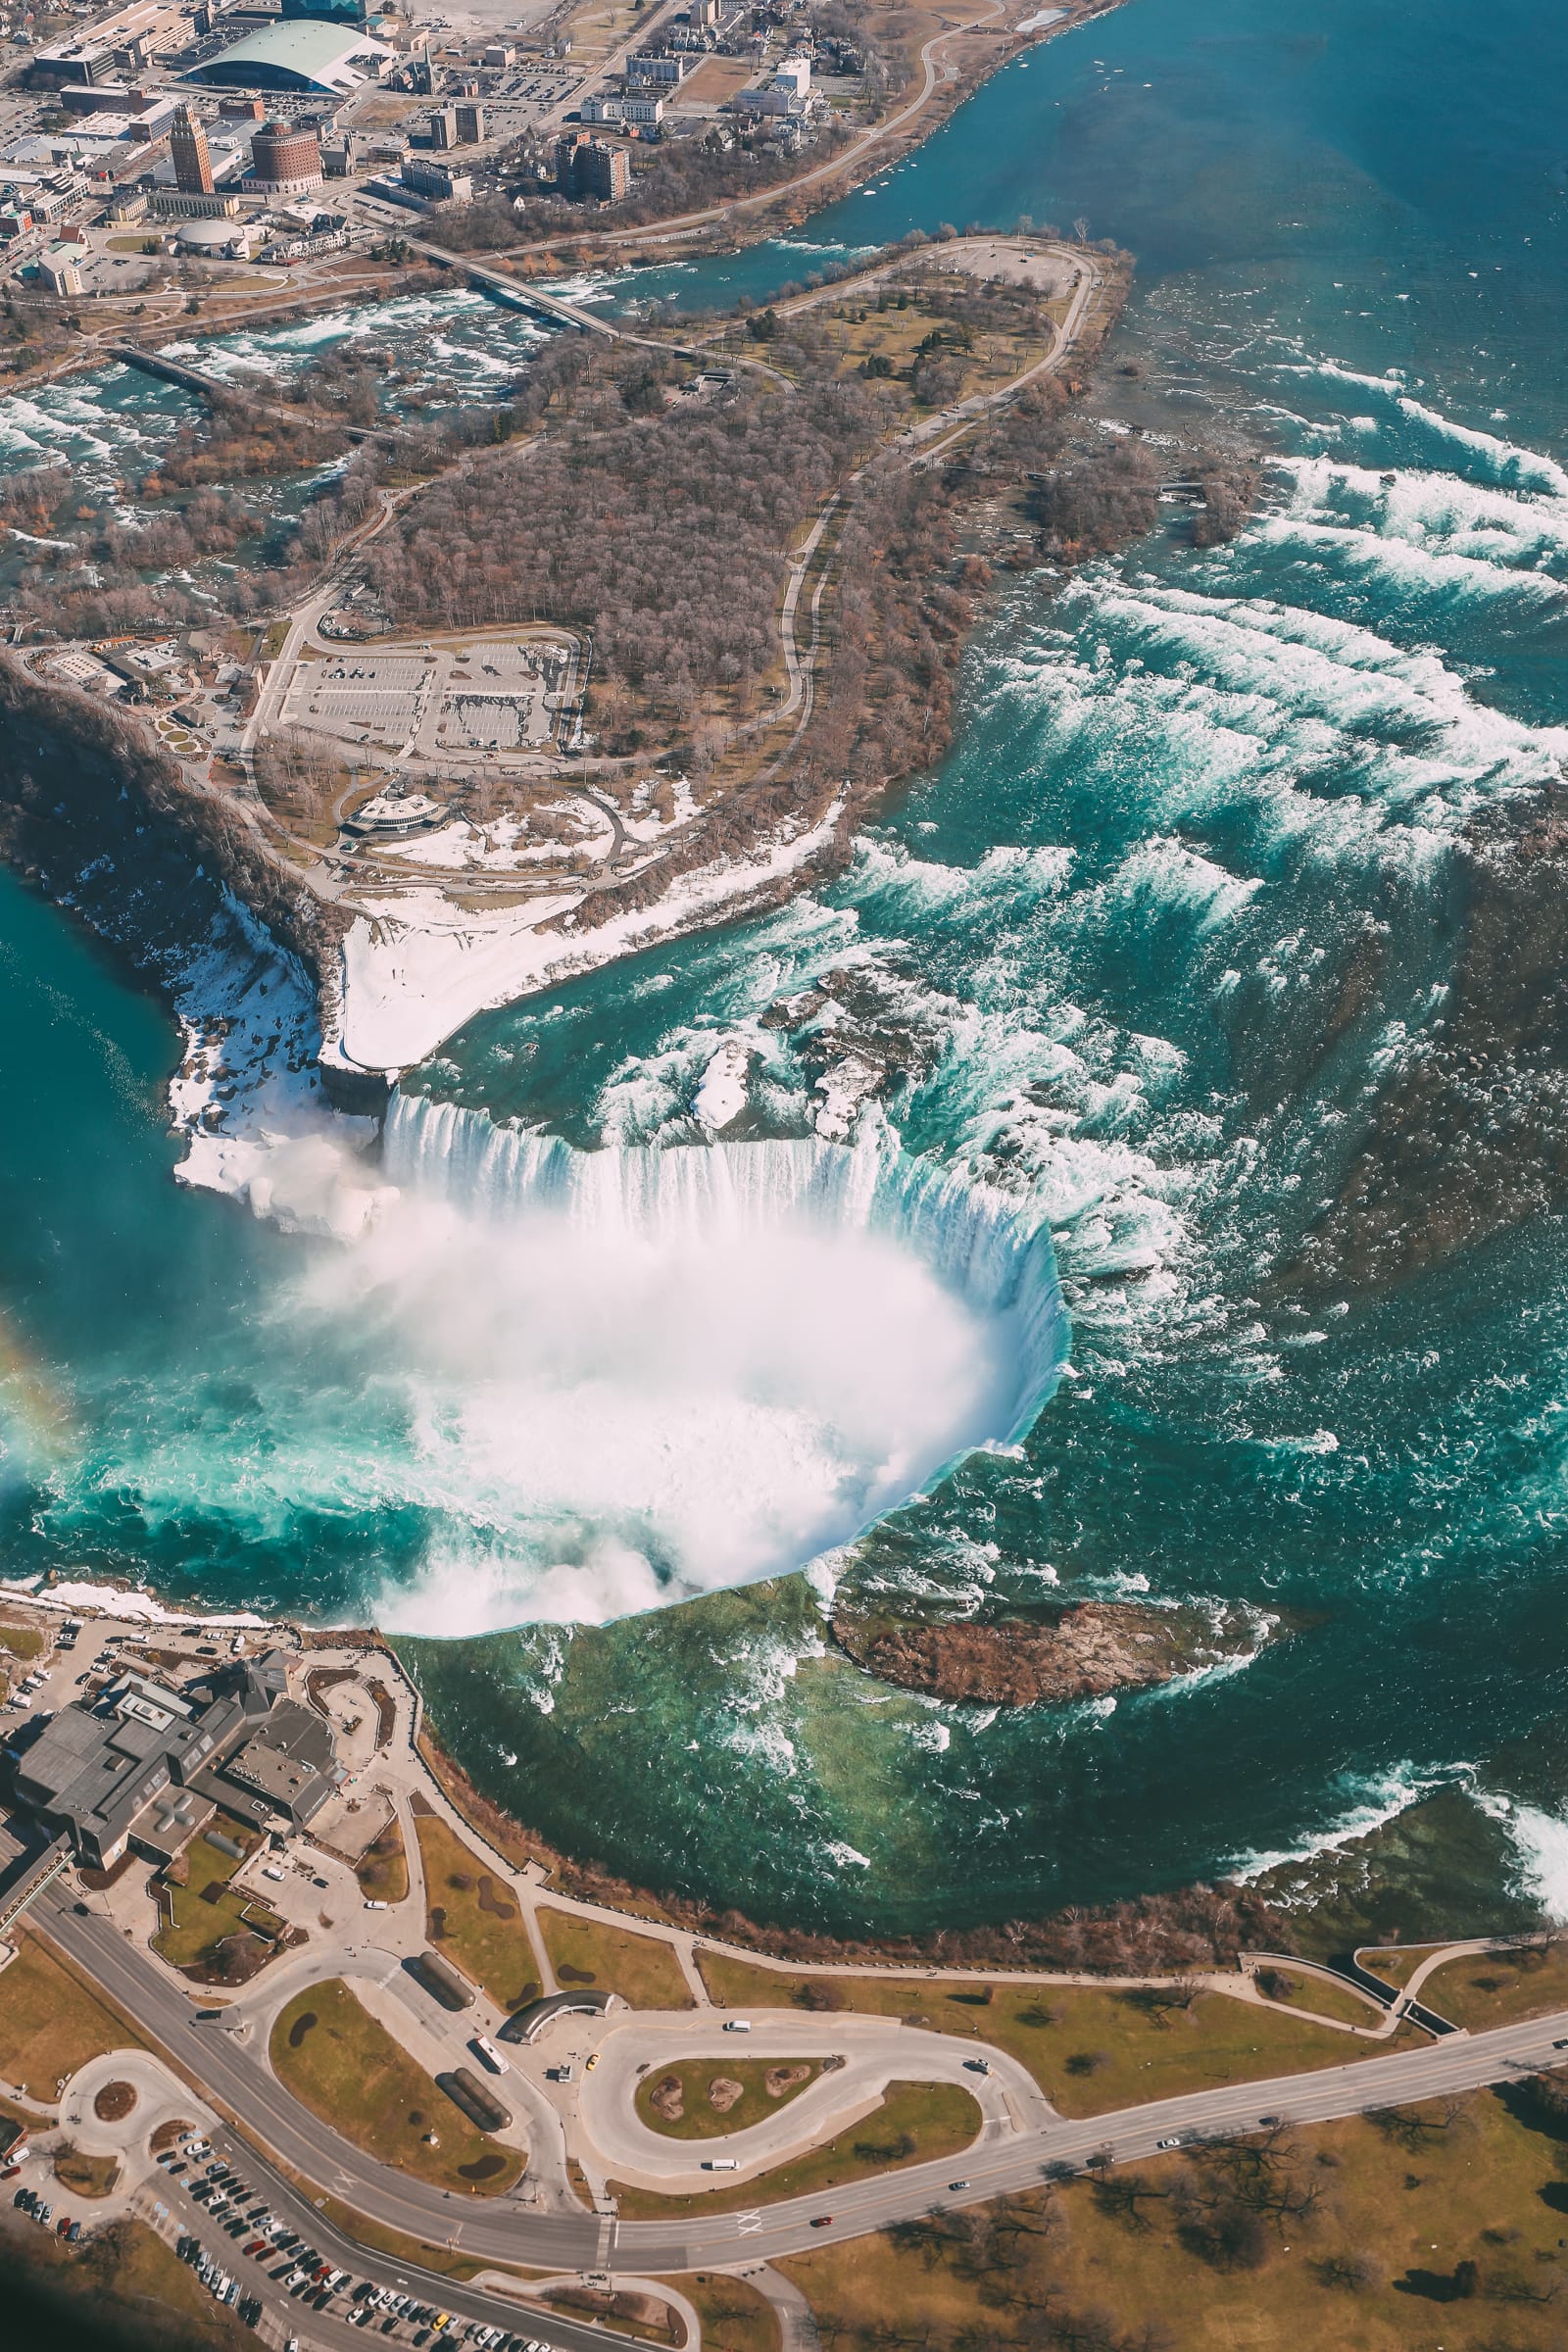 My Experience At The Niagara Falls